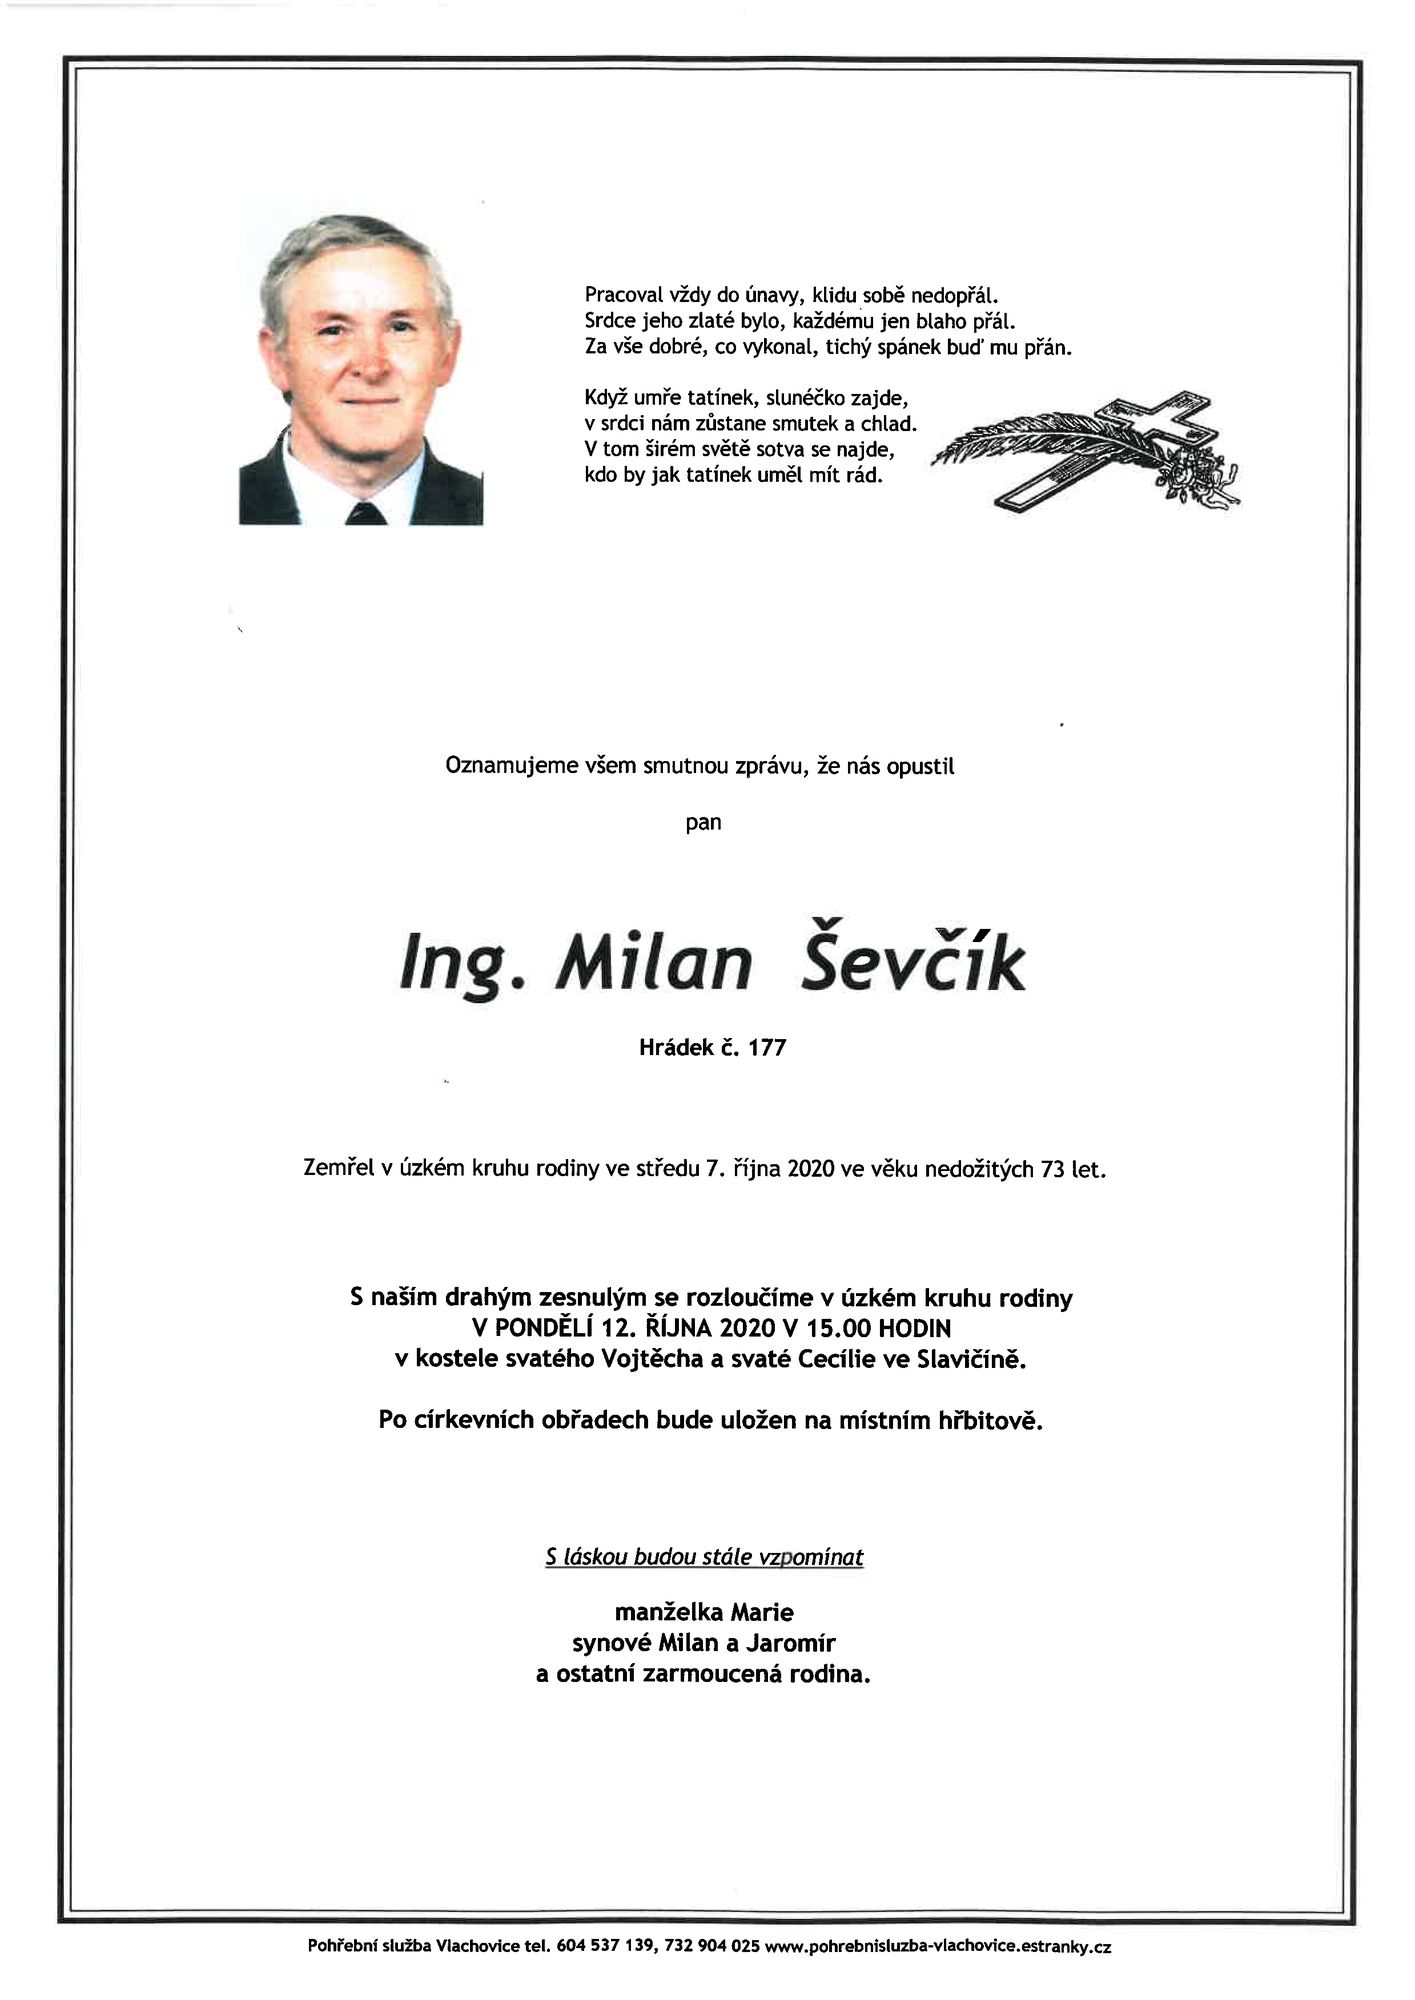 Ing. Milan Ševčík